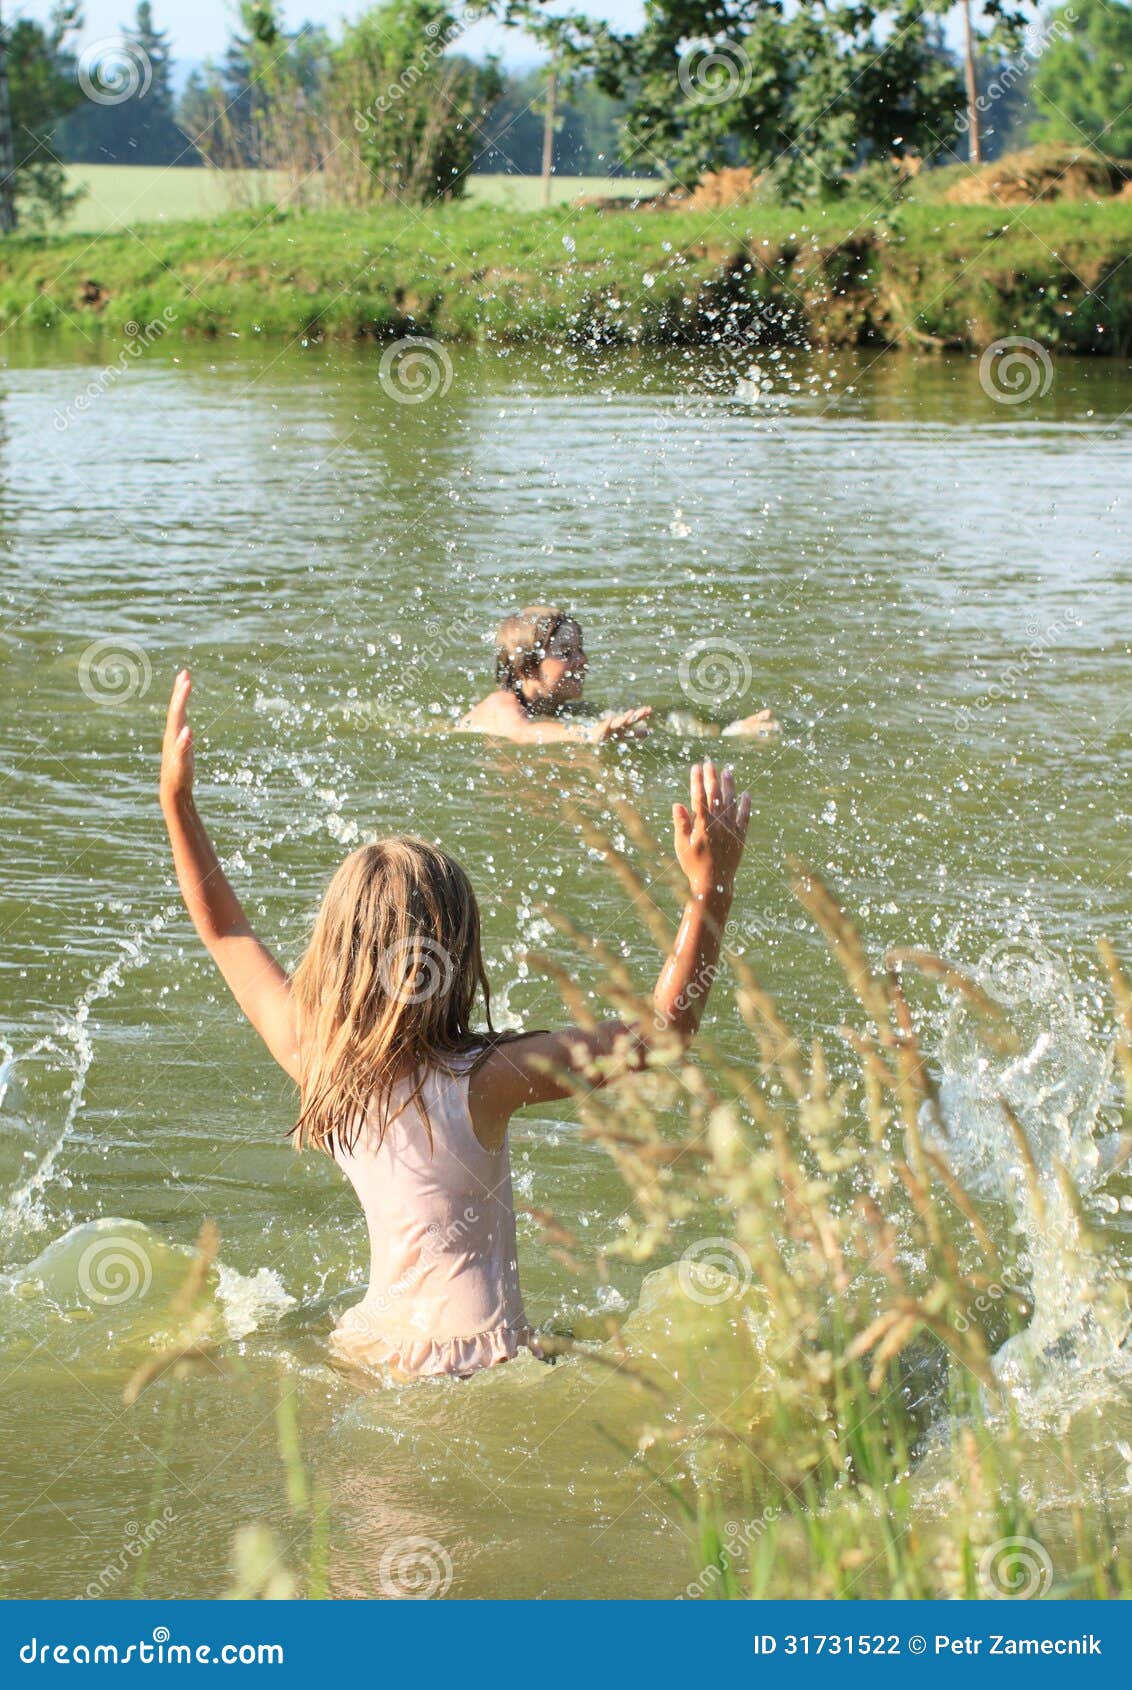 Купалась белье. Девочки купаются в озере. Девочки купаются в реке. Девочка купается в речке. Девочки купаются в пруду.